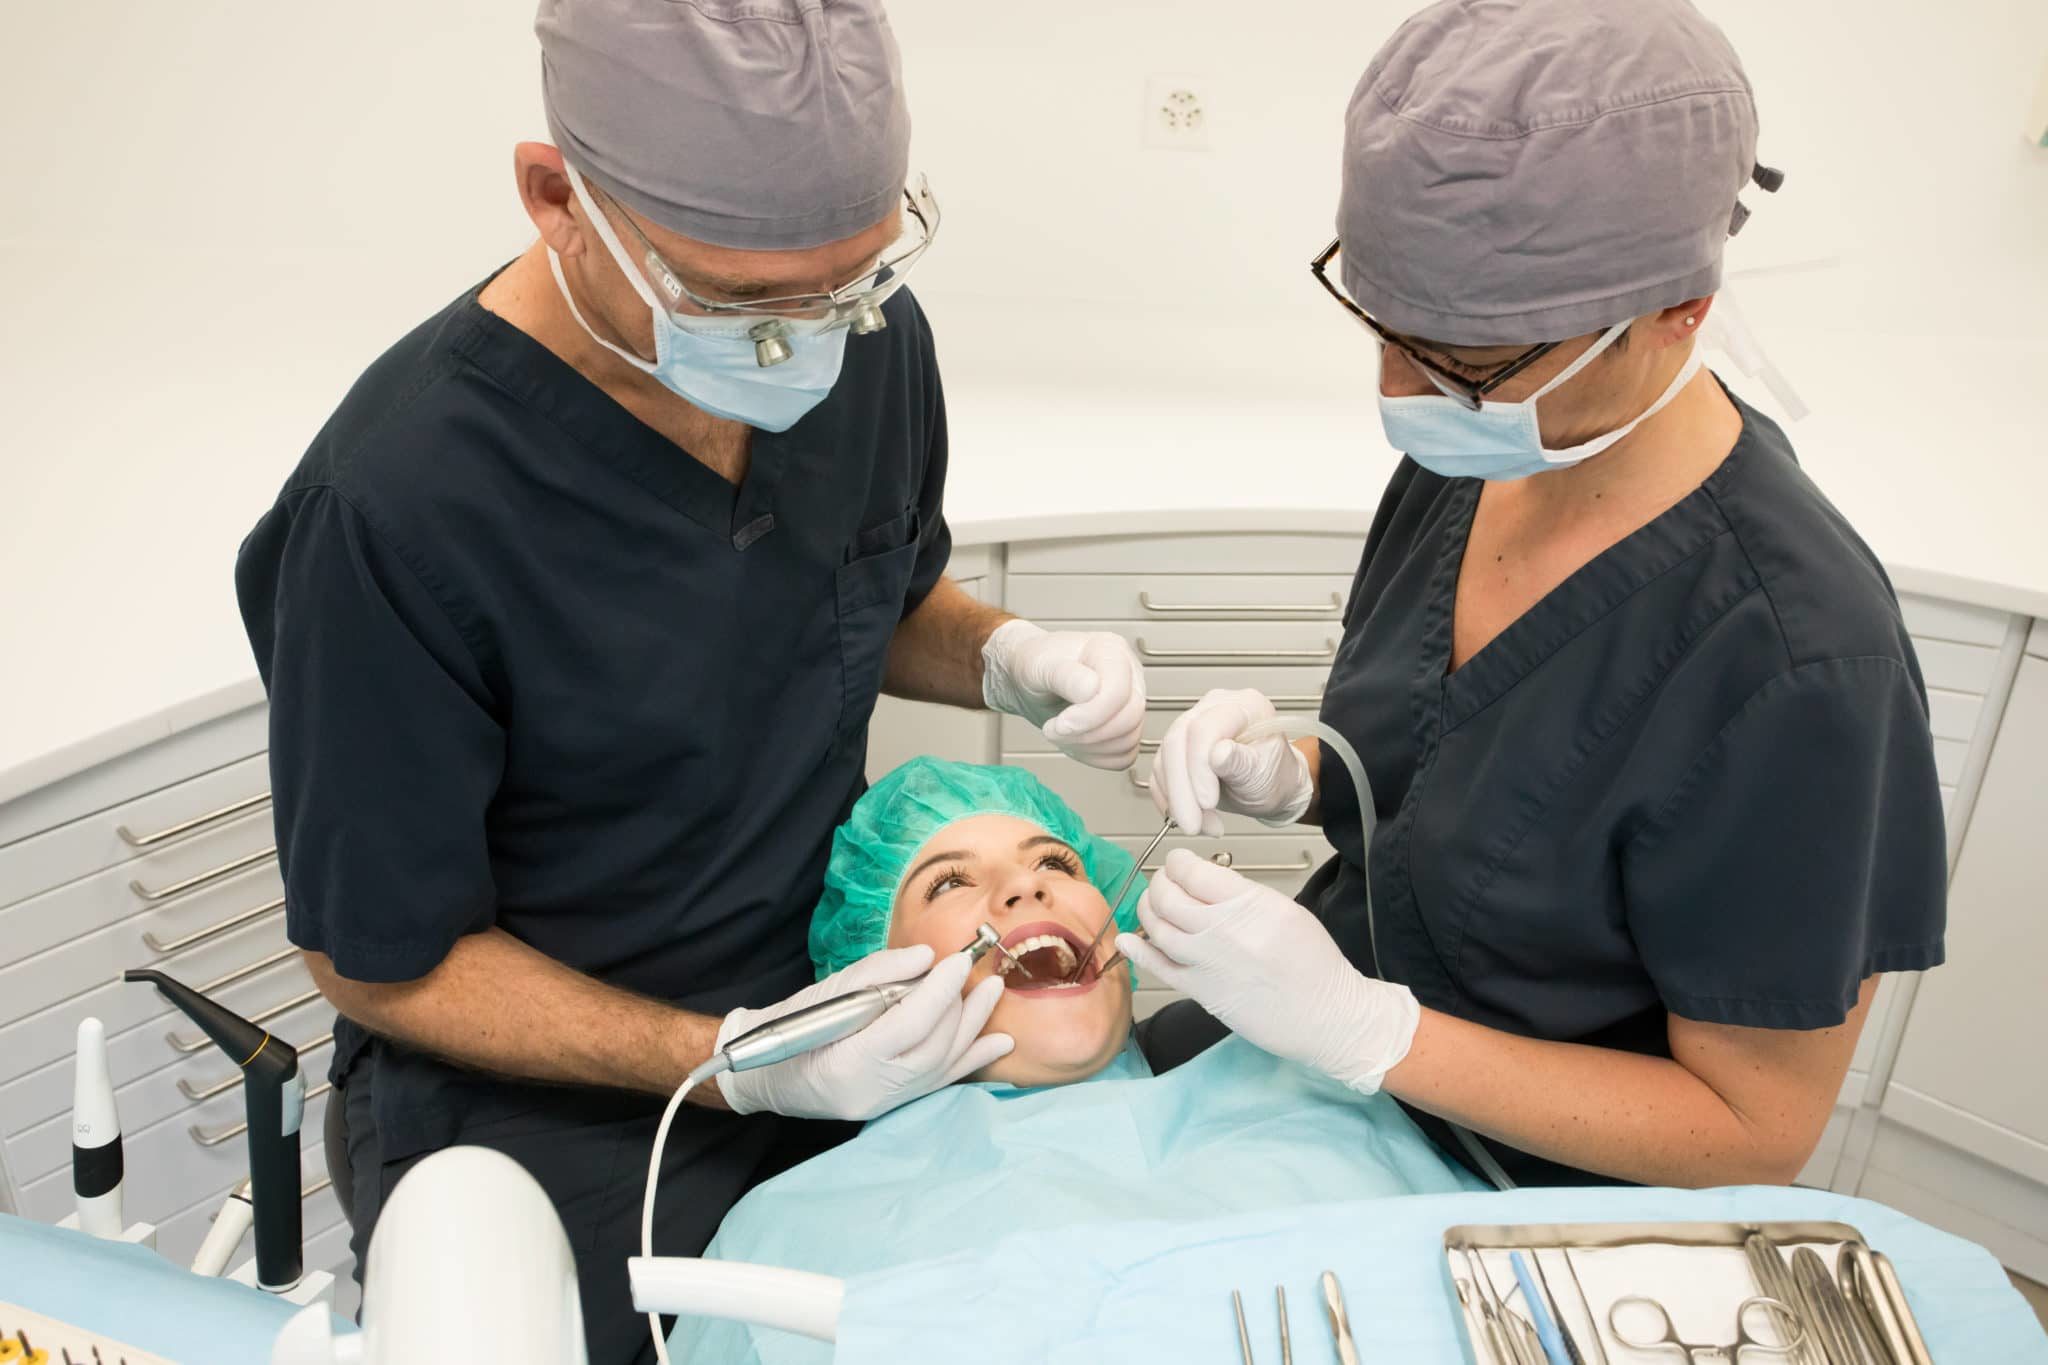 Extraction dentaire : quand, durée, déroulé, soins après